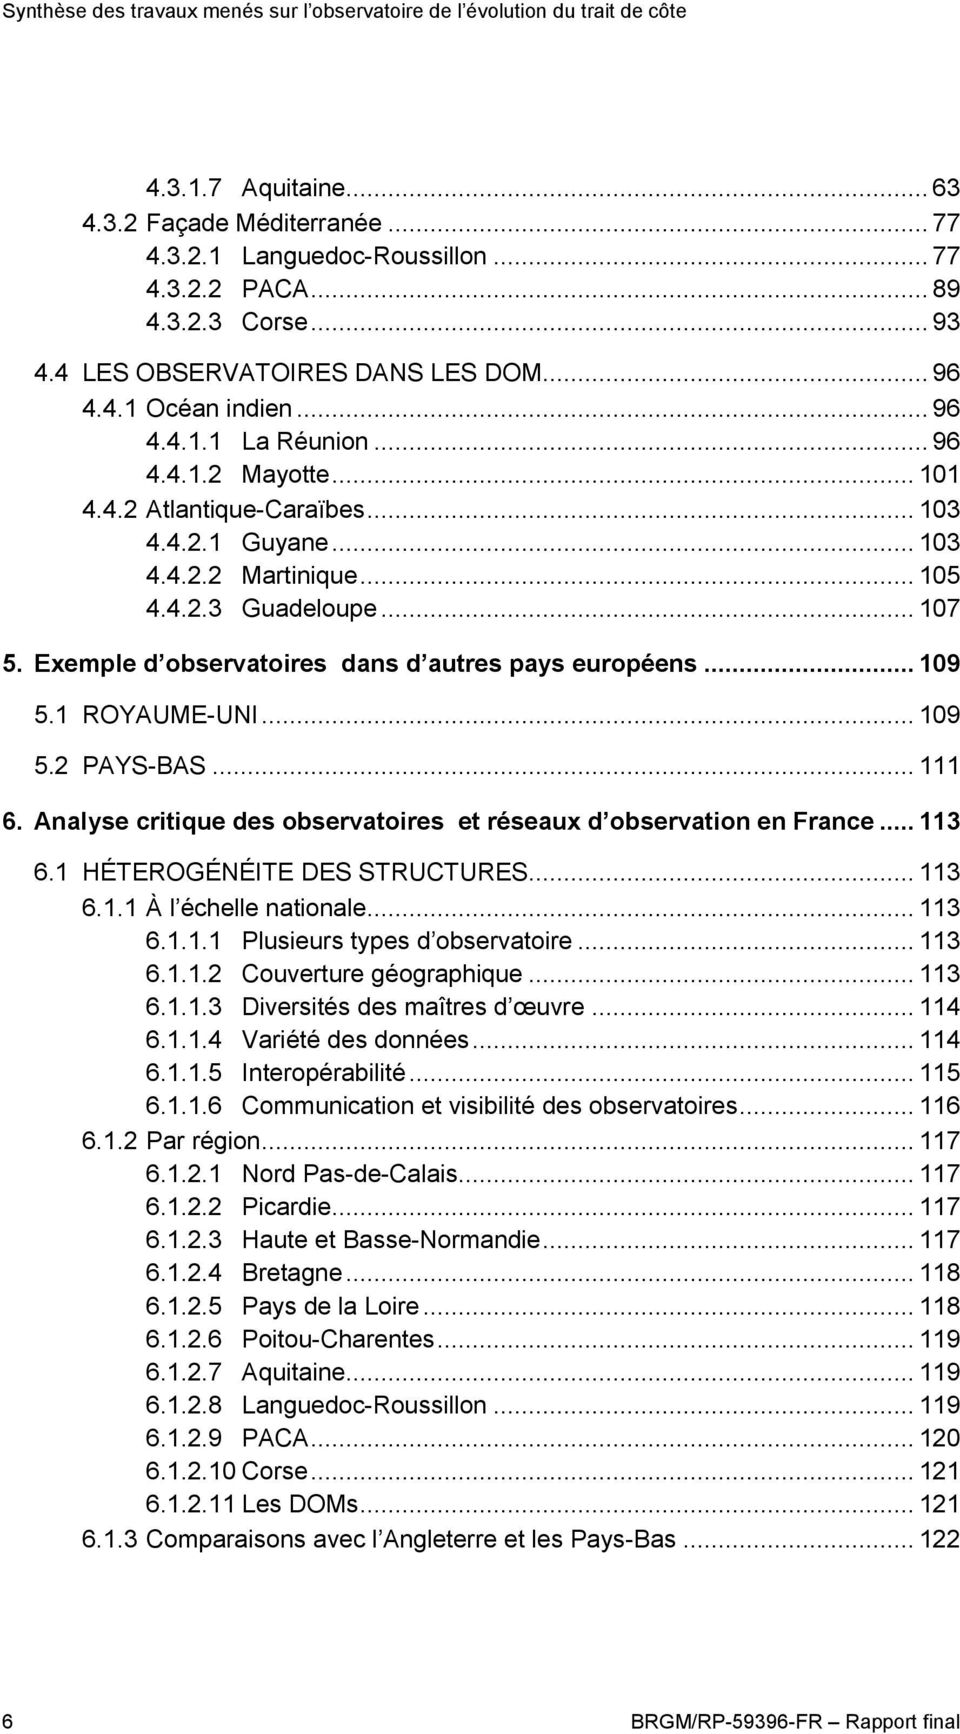 1 ROYAUME-UNI... 109 5.2 PAYS-BAS... 111 6. Analyse critique des observatoires et réseaux d observation en France... 113 6.1 HÉTEROGÉNÉITE DES STRUCTURES... 113 6.1.1 À l échelle nationale... 113 6.1.1.1 Plusieurs types d observatoire.